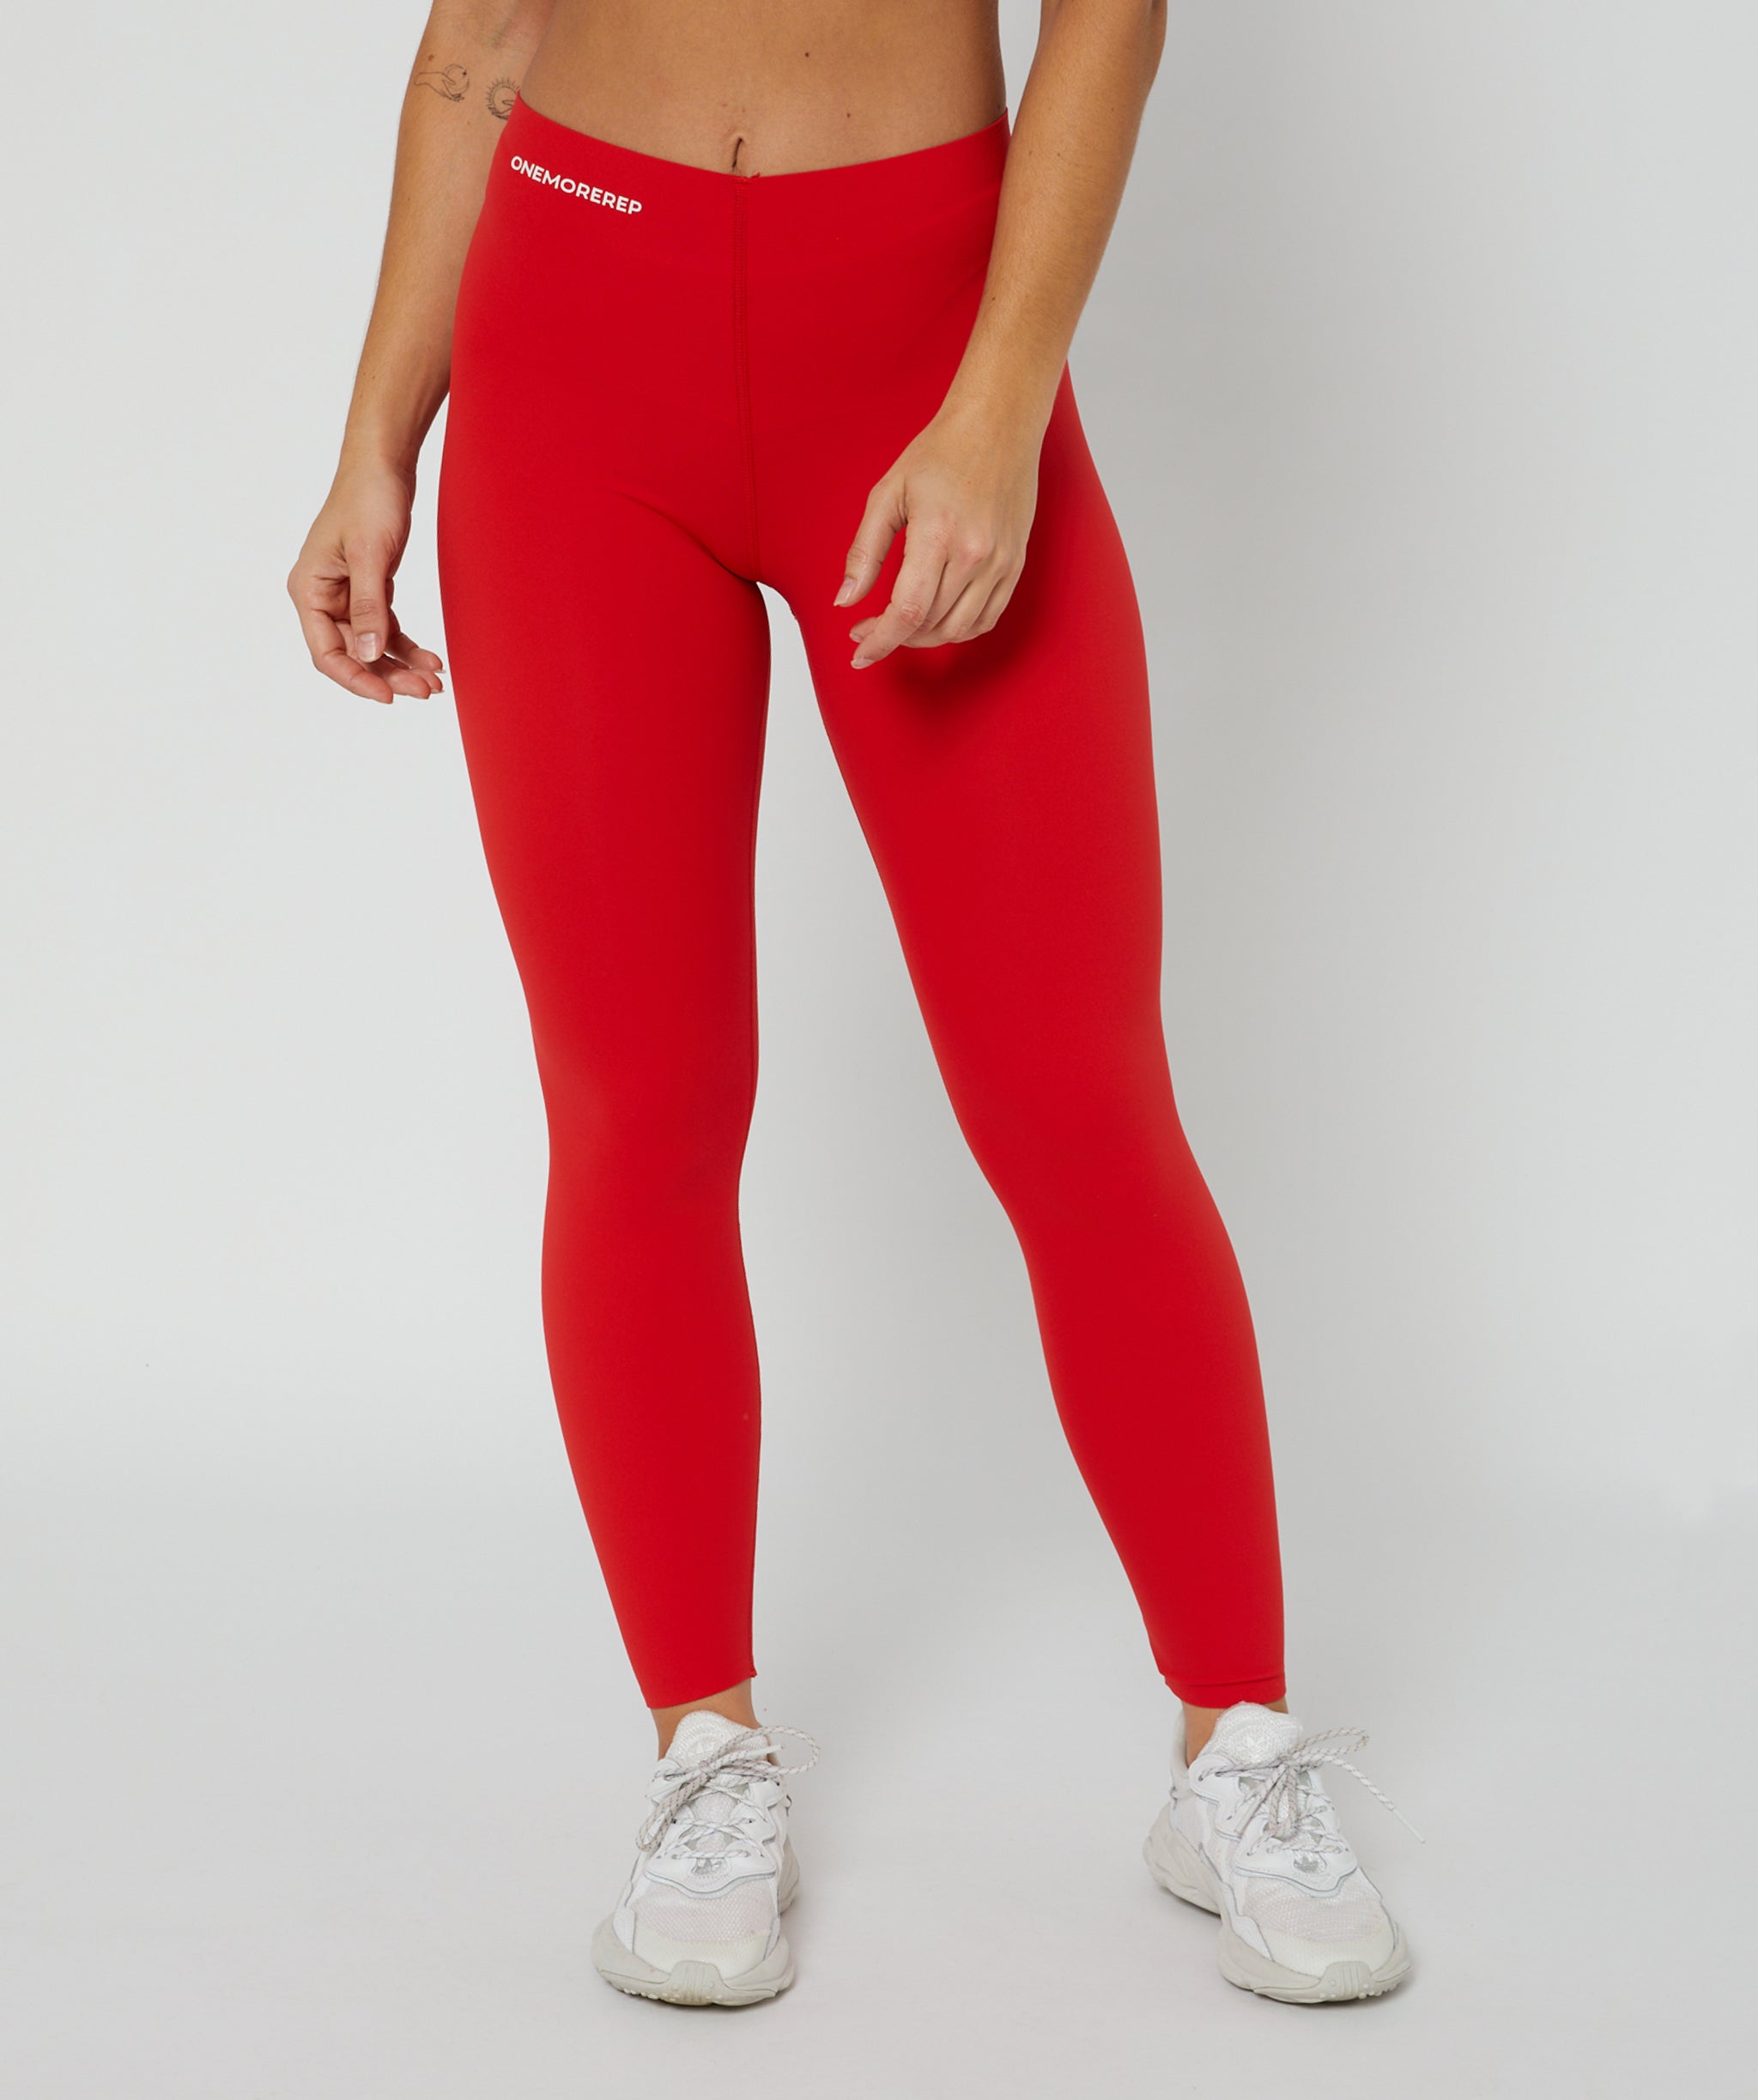 Sleek Leggings Full Length Red – OneMoreRep